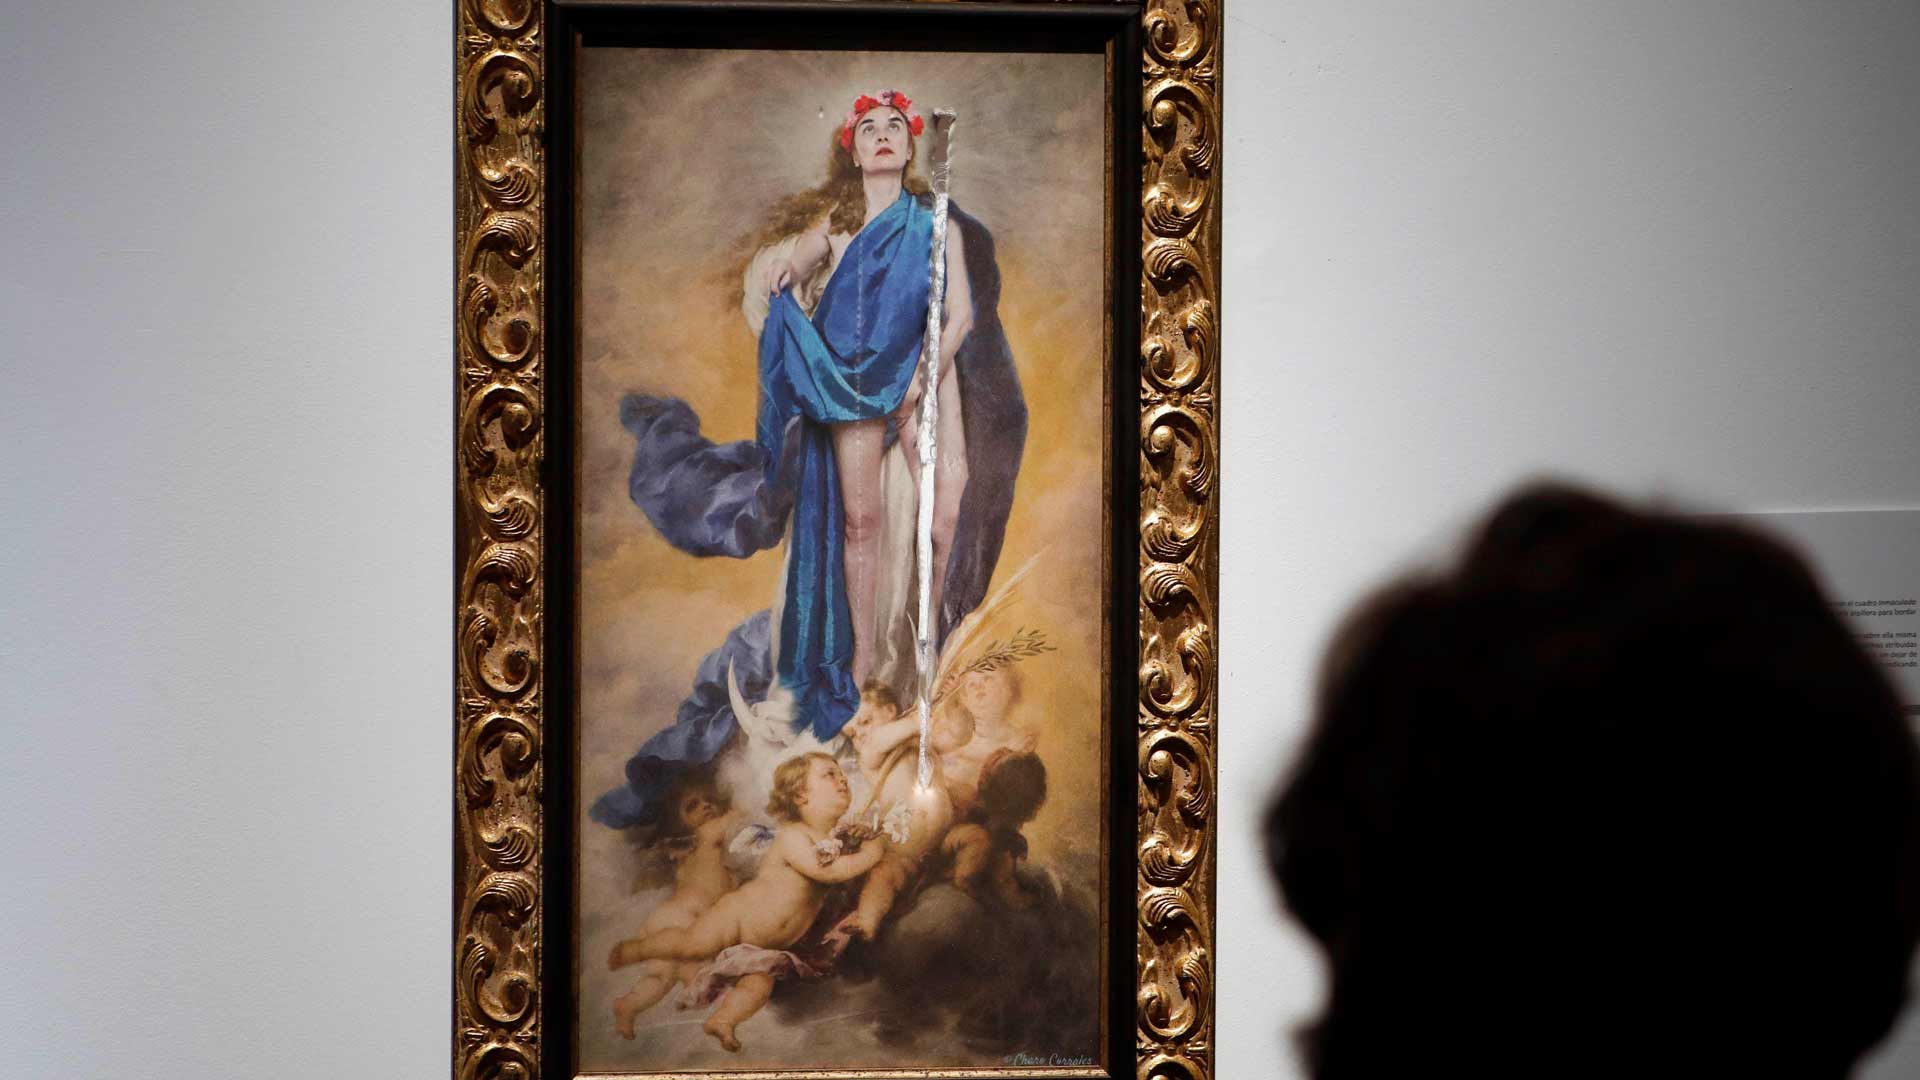 Destrozado en Córdoba un cuadro de una virgen con la mano en sus partes íntimas